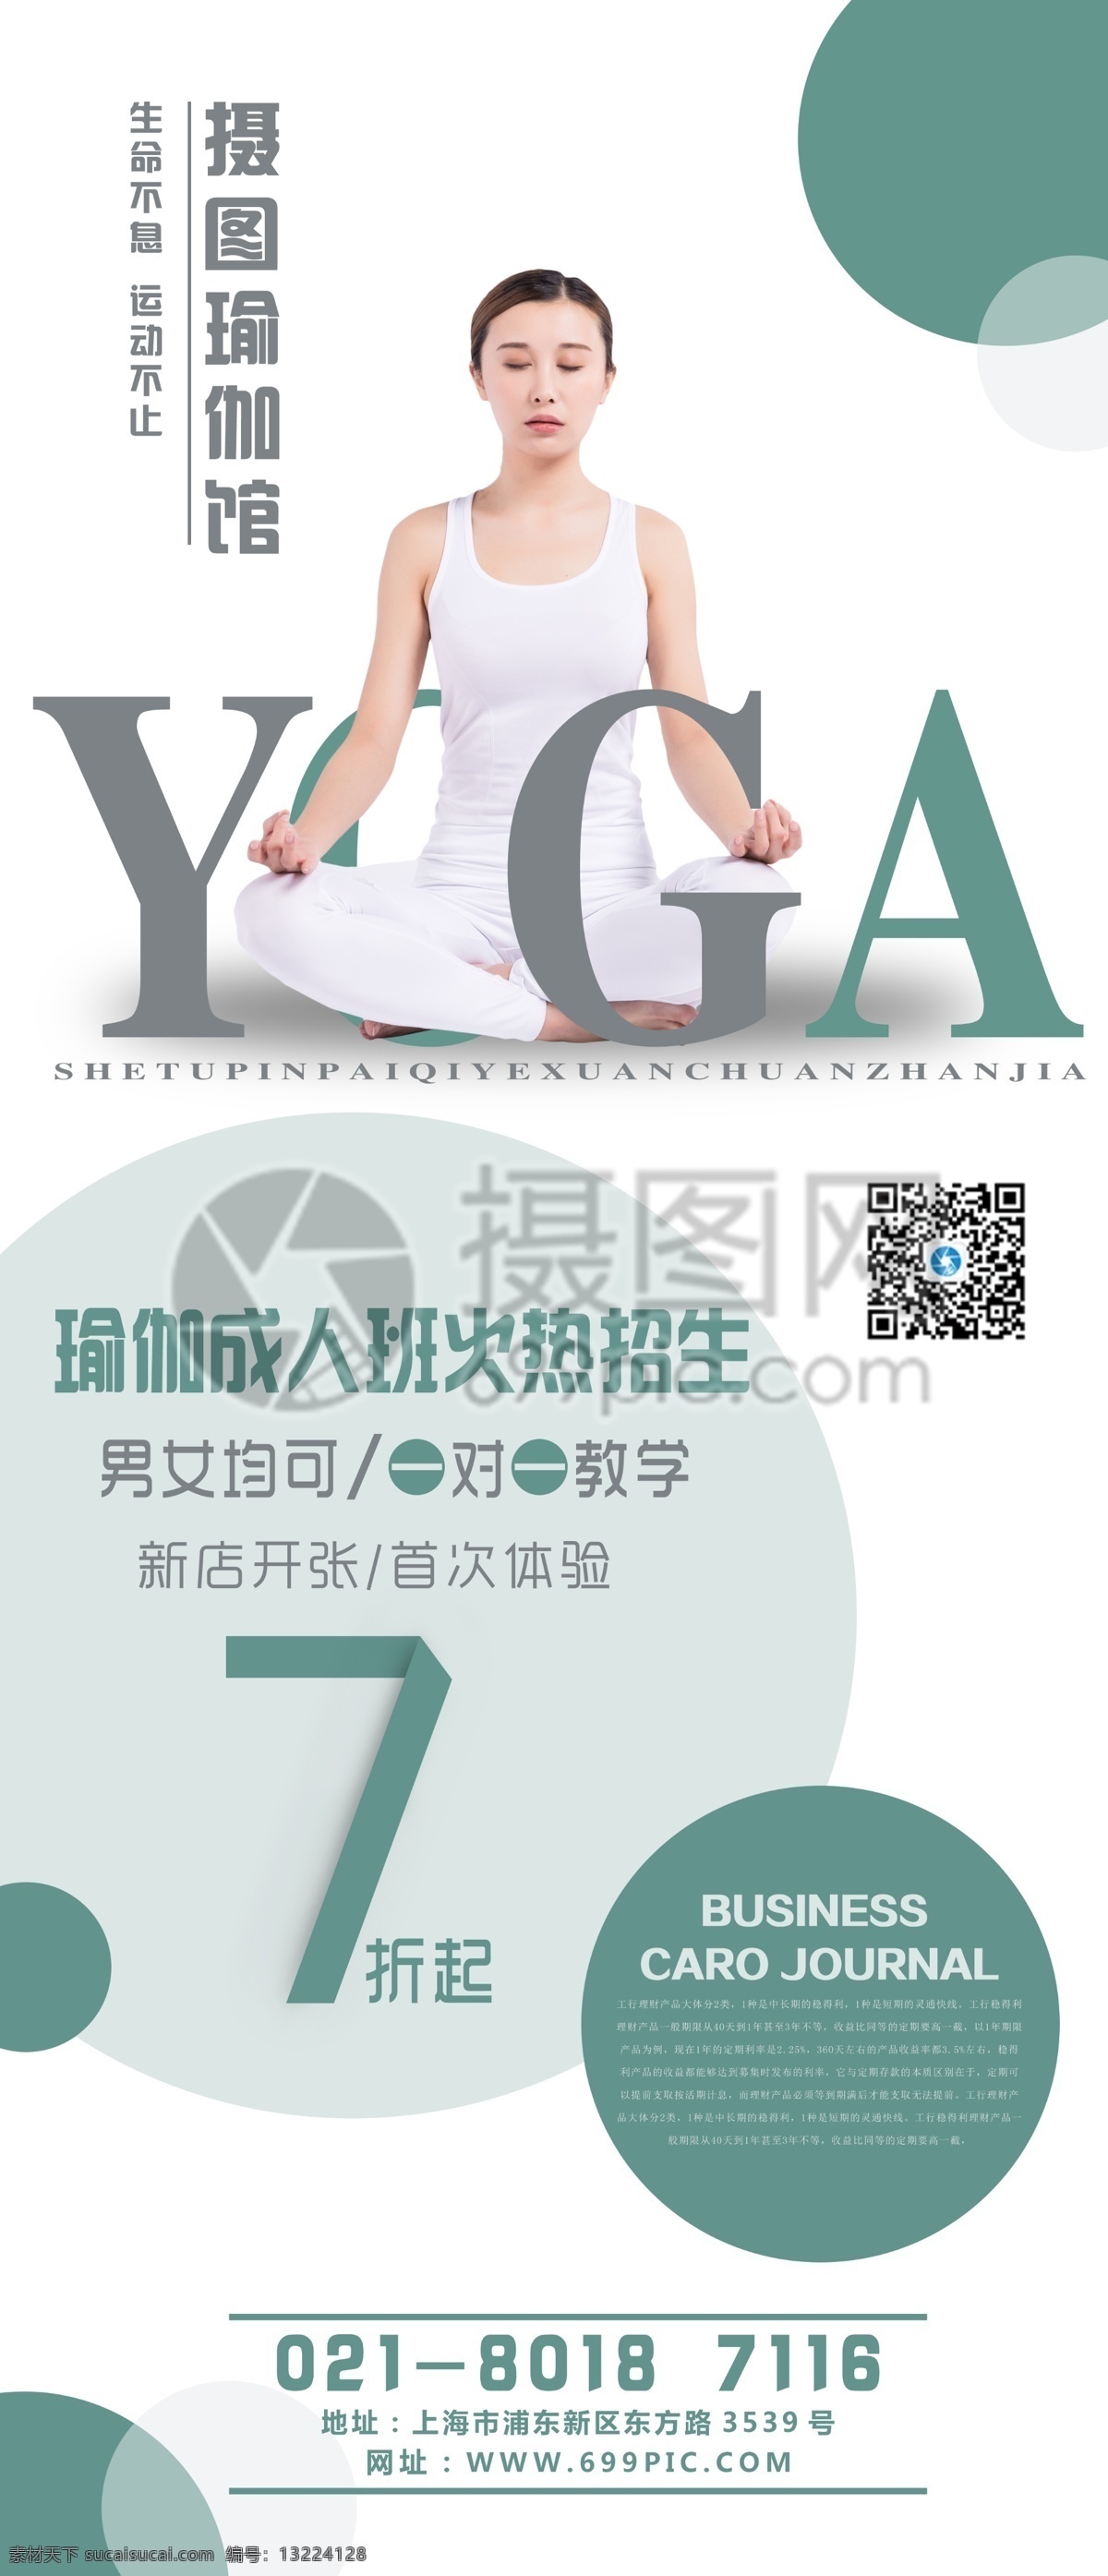 瑜伽 馆 宣传 x 展架 展示 运动 运动宣传 yoga 瑜伽馆 x展架 易拉宝 运动健身 瑜伽锻炼